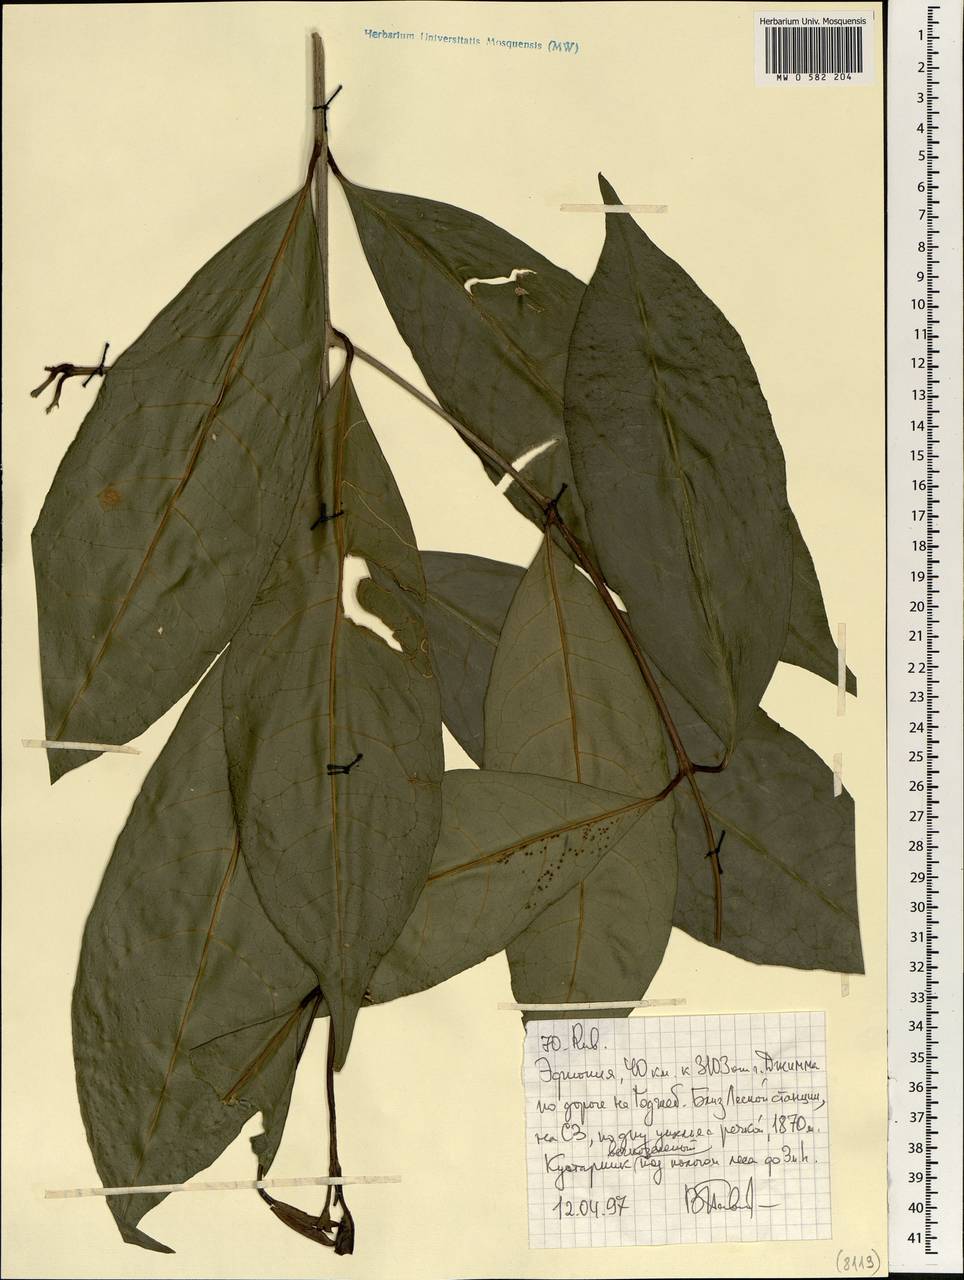 Rubiaceae, Africa (AFR) (Ethiopia)